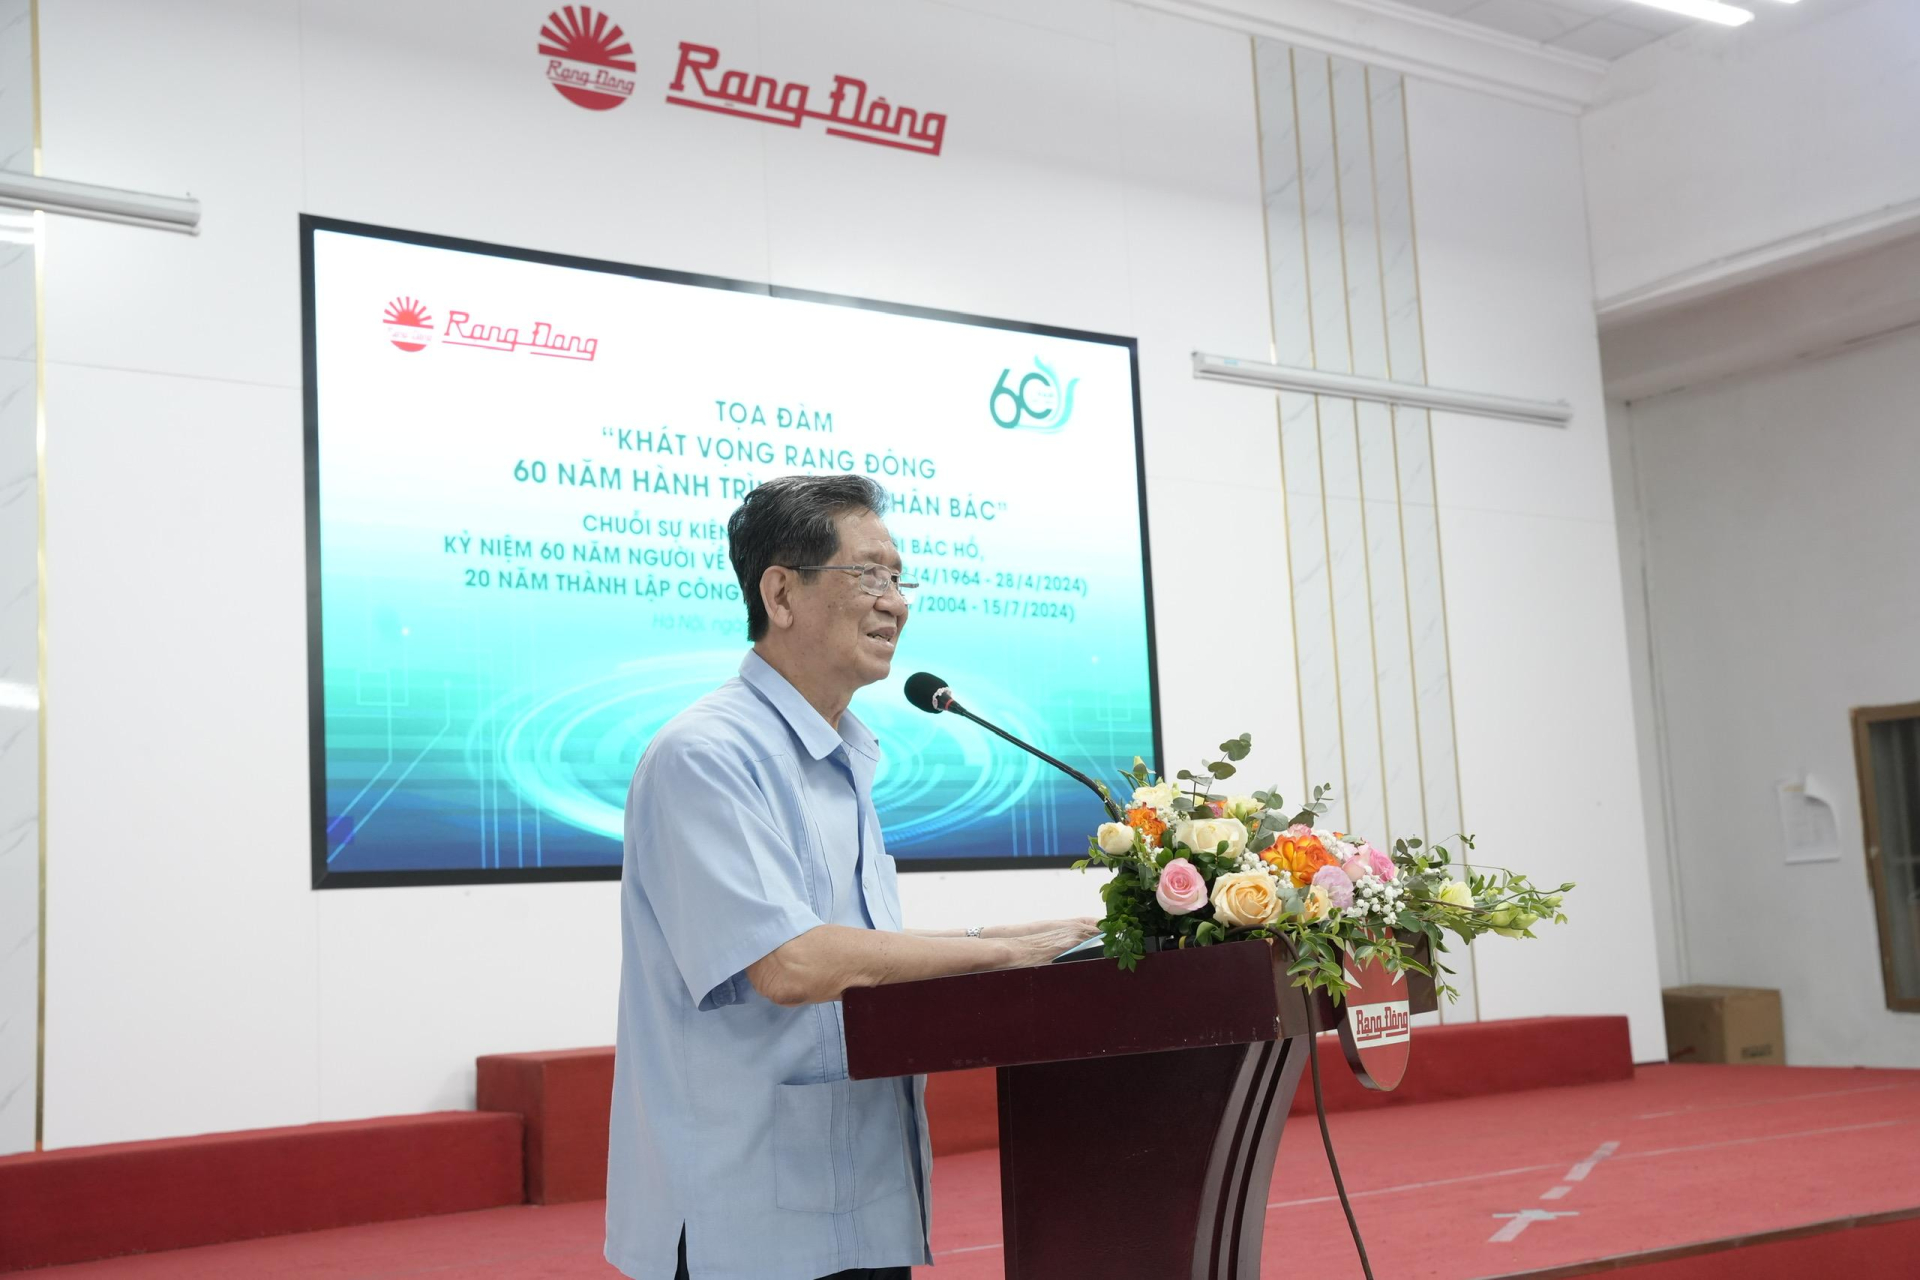 Ông Nguyễn Đoàn Thăng - Tổng giám đốc Công ty Rạng Đông phát biểu tại sự kiện.